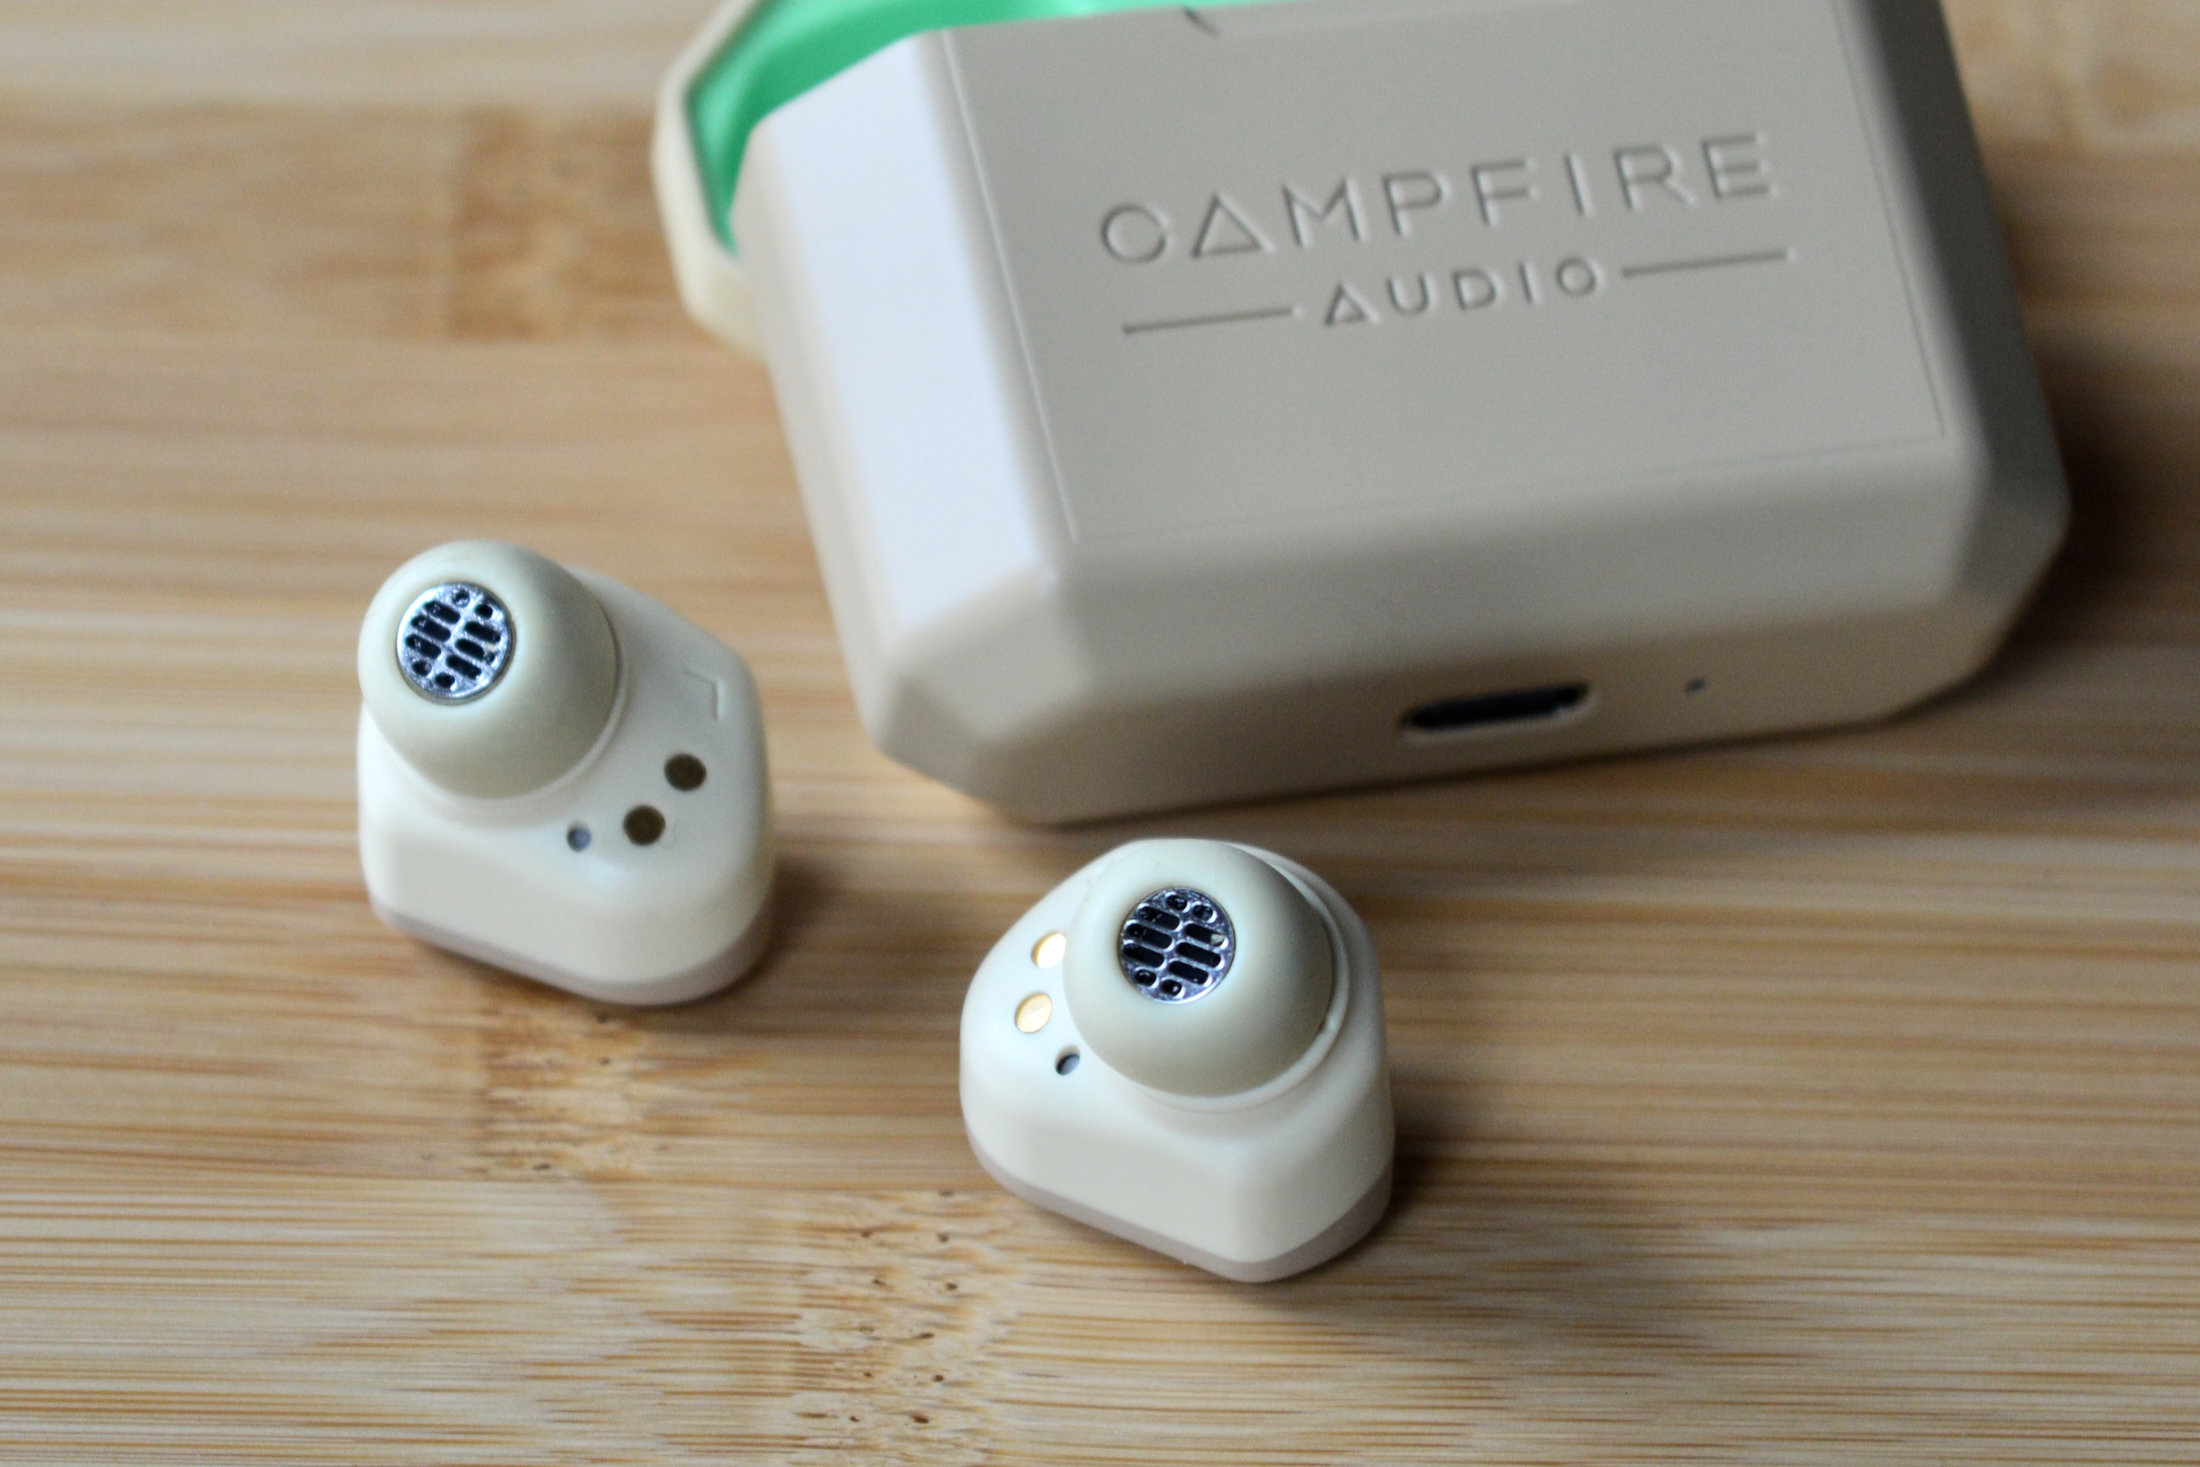 Fones de ouvido Campfire Audio Orbit ao lado do estojo de carregamento.